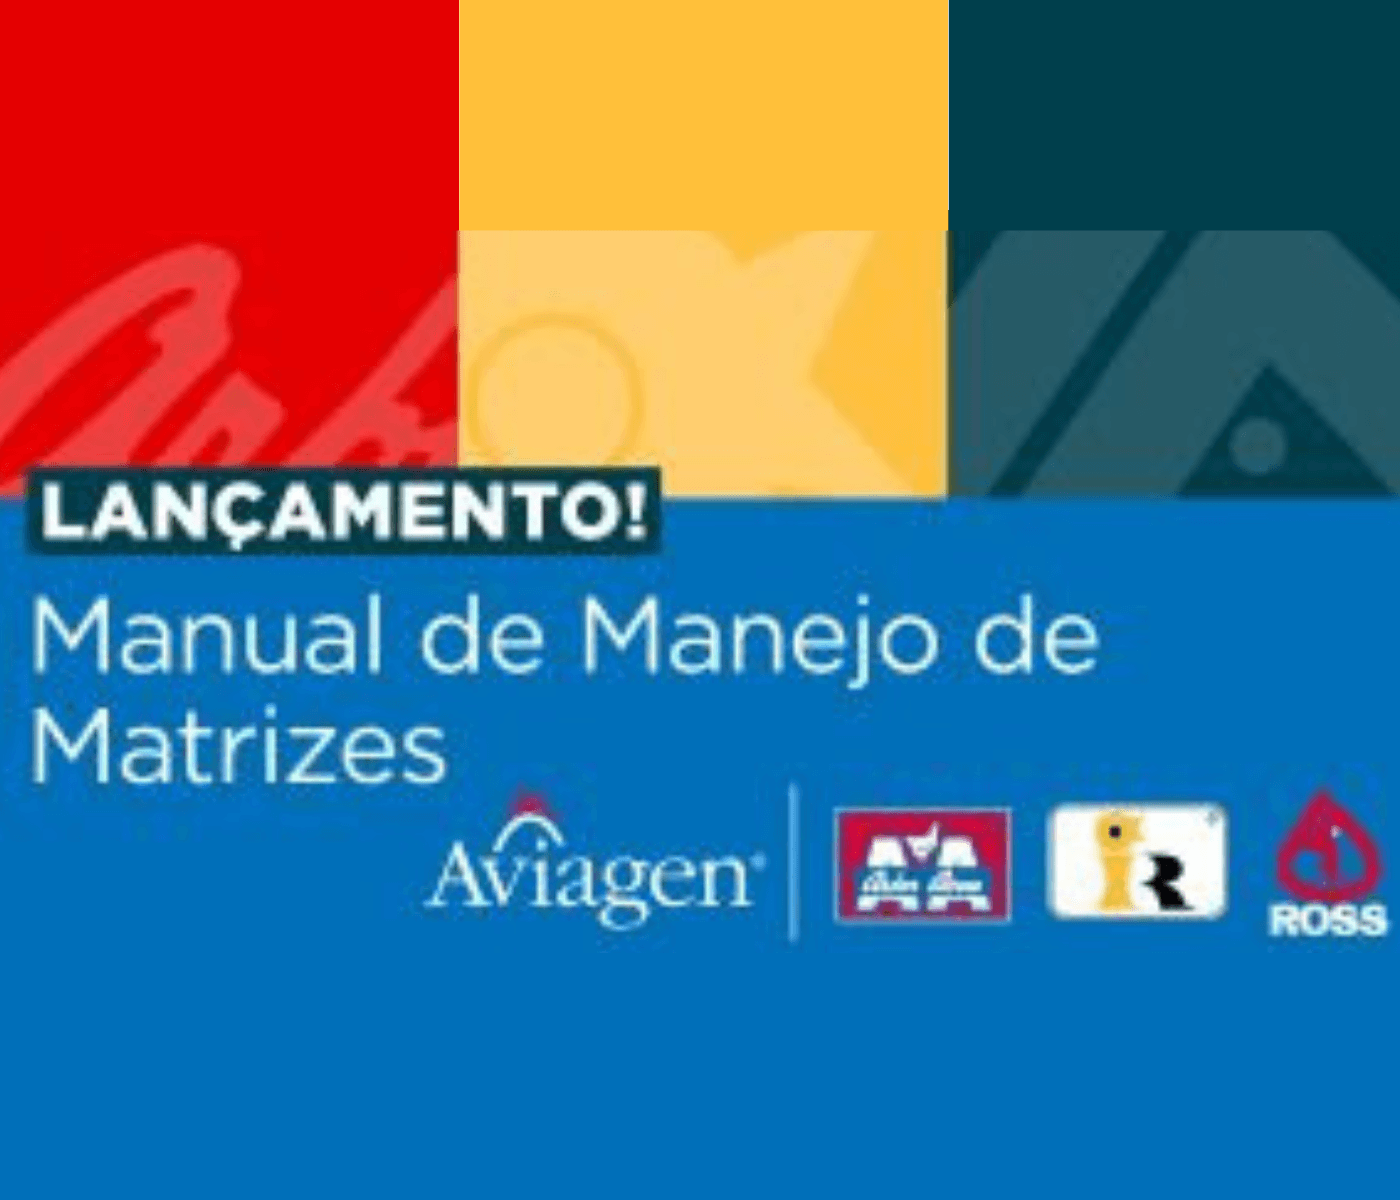 Aviagen lança manuais de manejo de matrizes para as marcas...